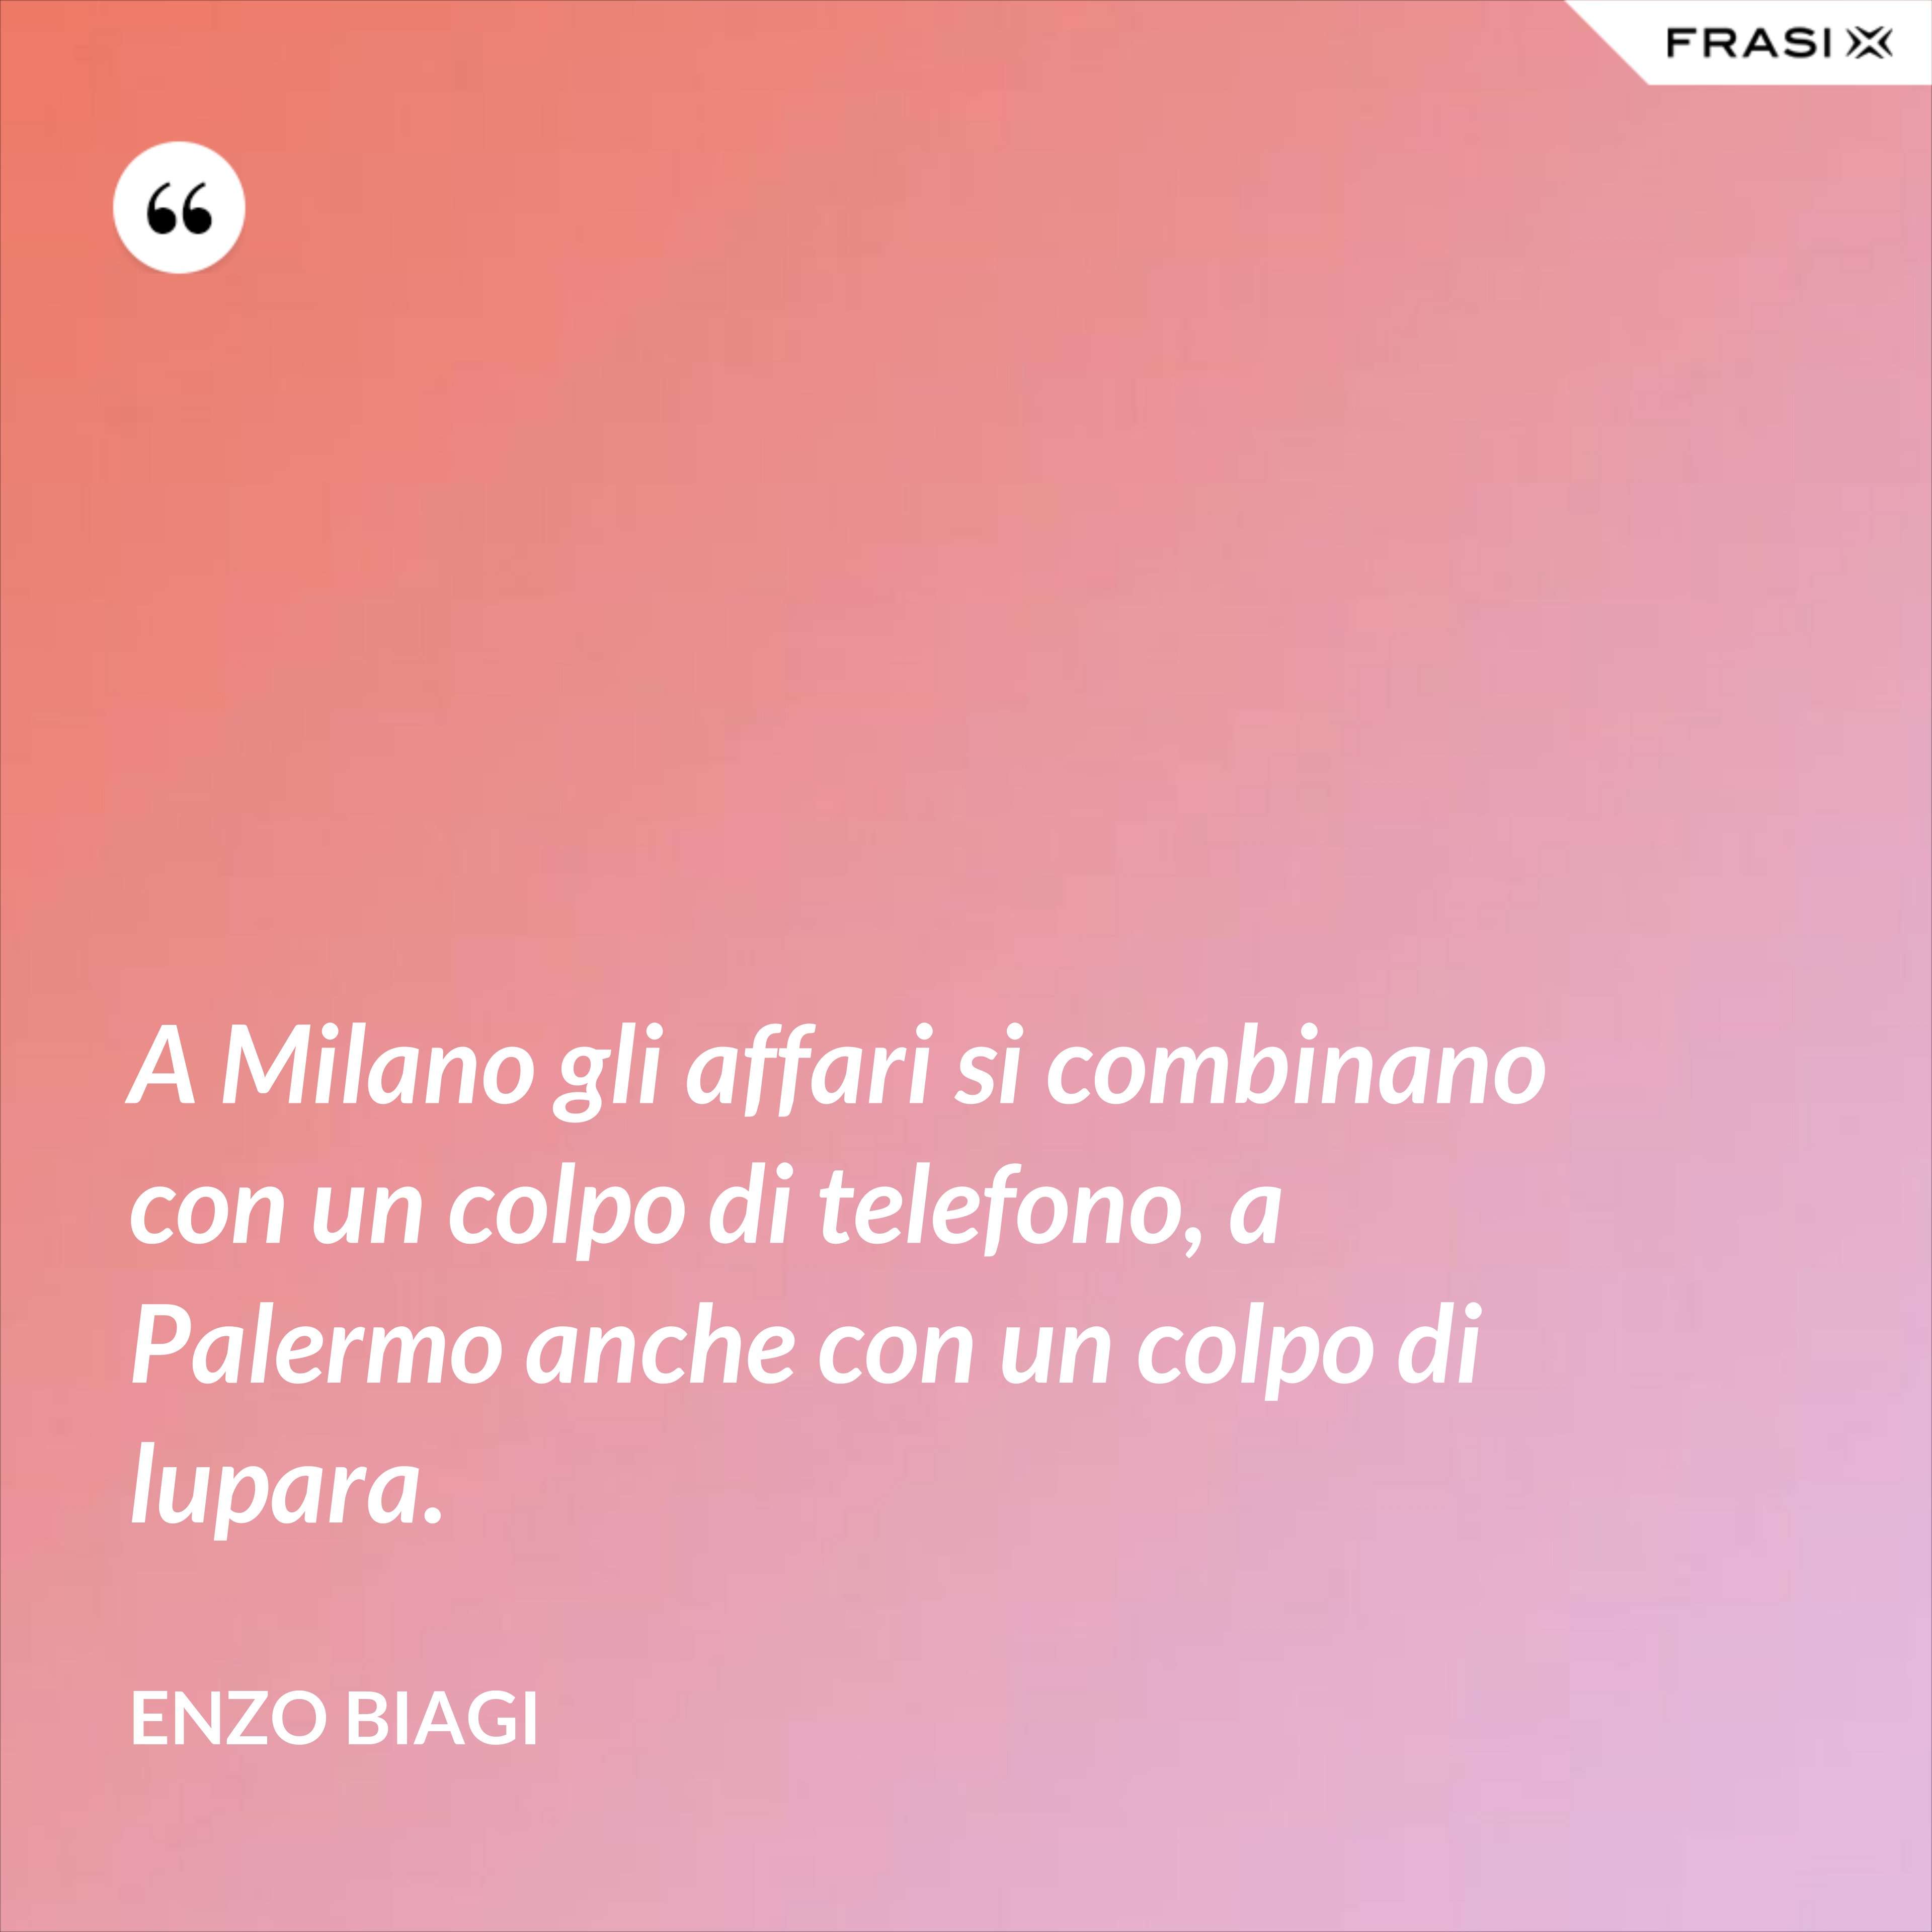 A Milano gli affari si combinano con un colpo di telefono, a Palermo anche con un colpo di lupara. - Enzo Biagi